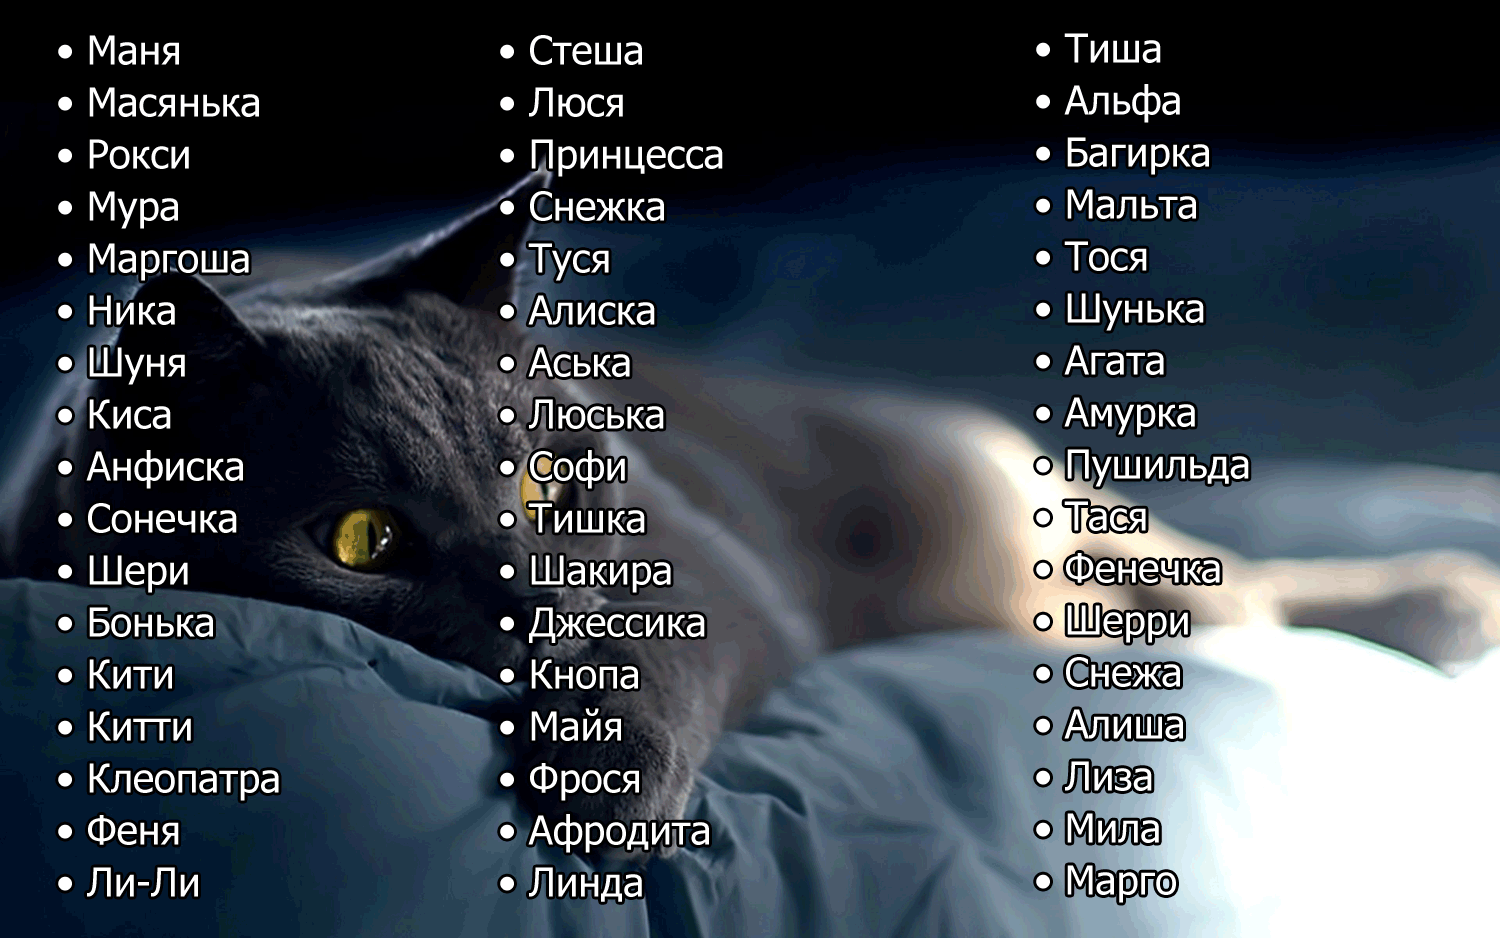 Самый полный список кличек для белого кота и кошки Имена на каждую букву алфавита Клички популярных персонажев, подборка оригинальных и прикольных вариантов